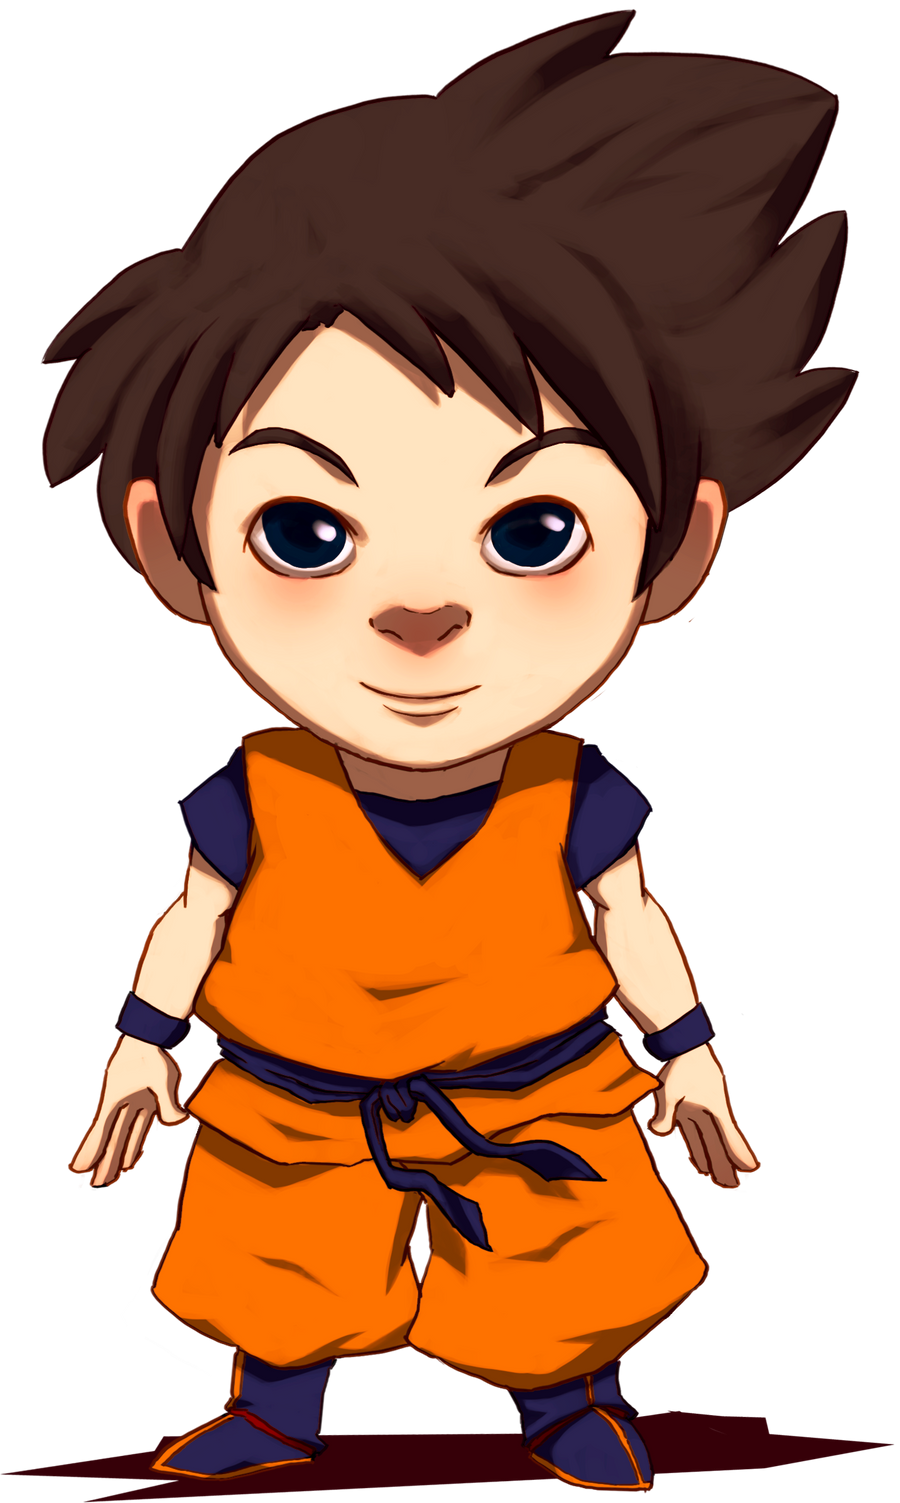 Son Goku of Saiyan.